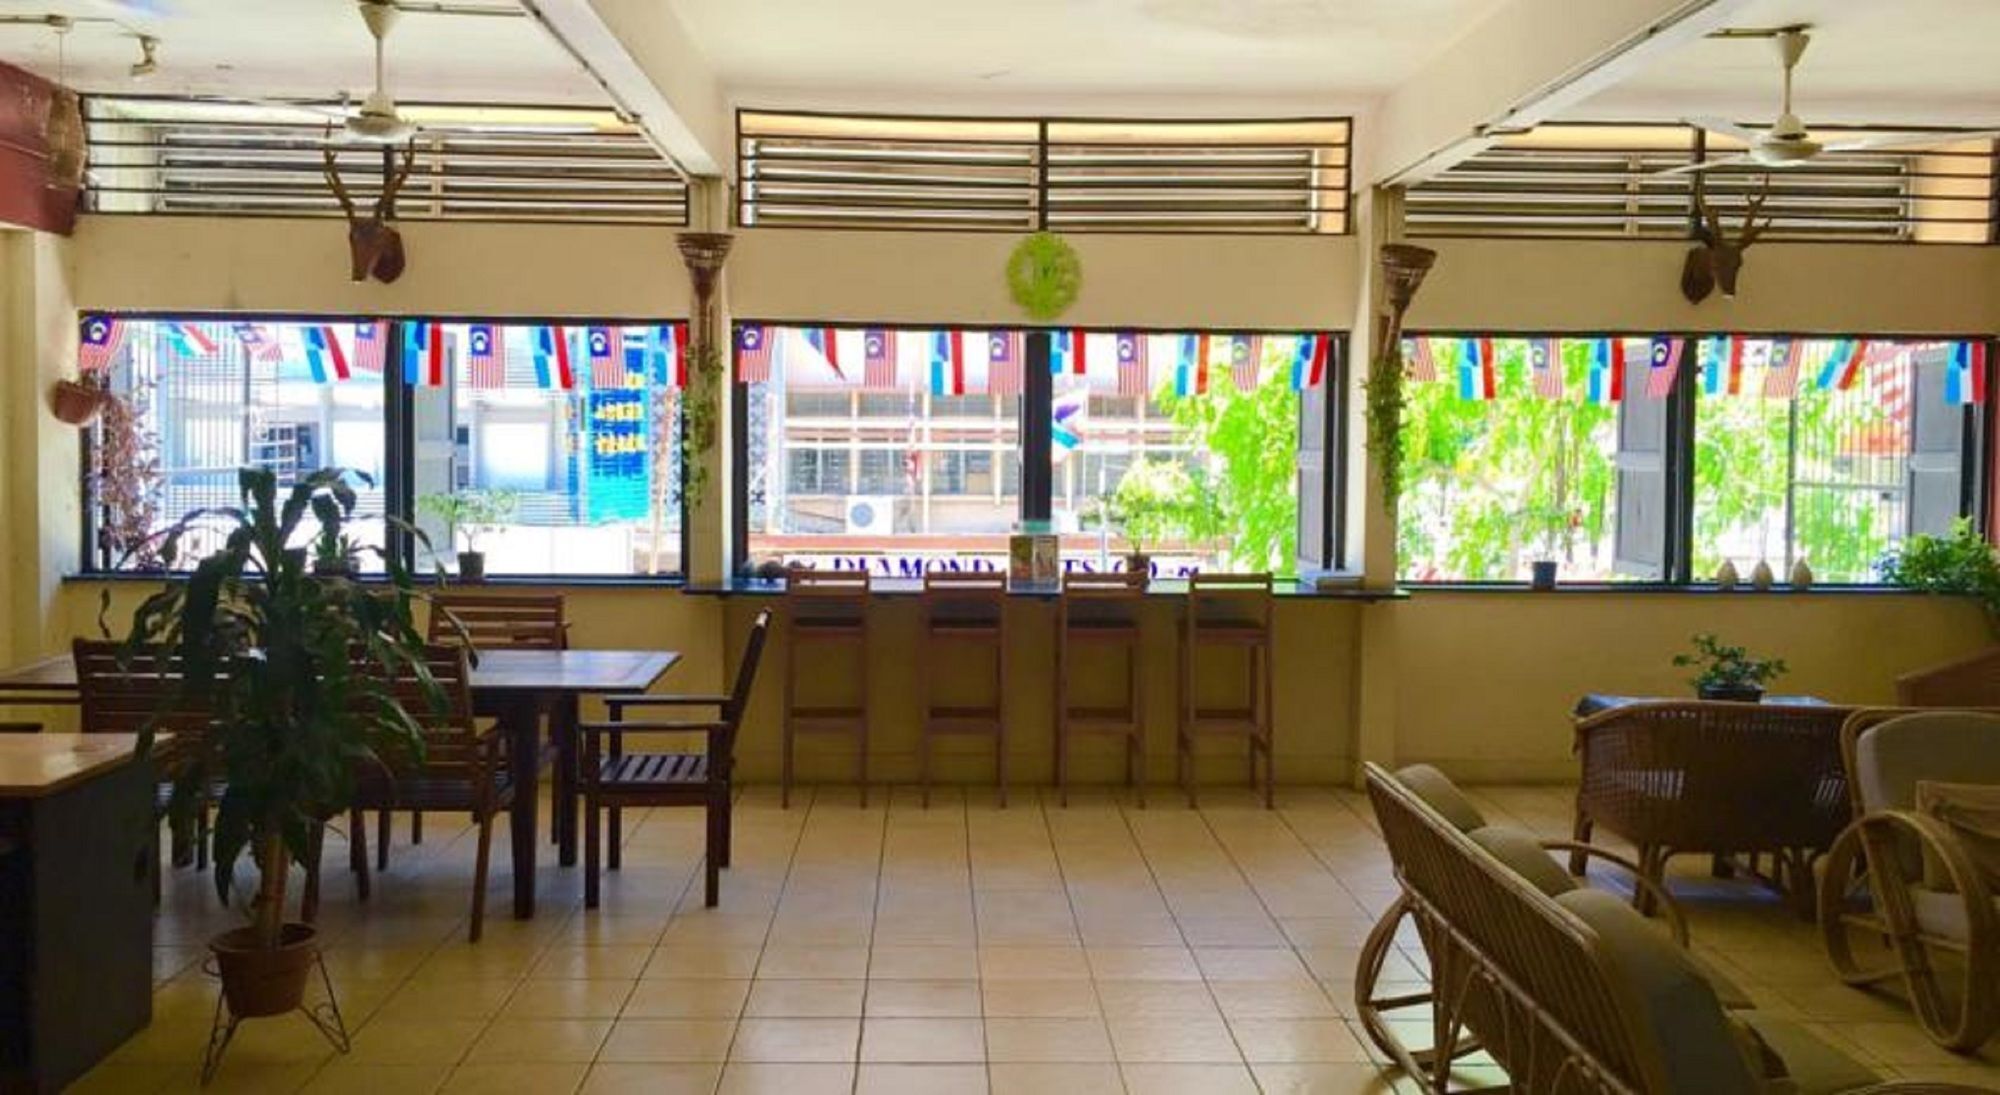 Akinabalu Youth Hostel Kota Kinabalu Exterior foto